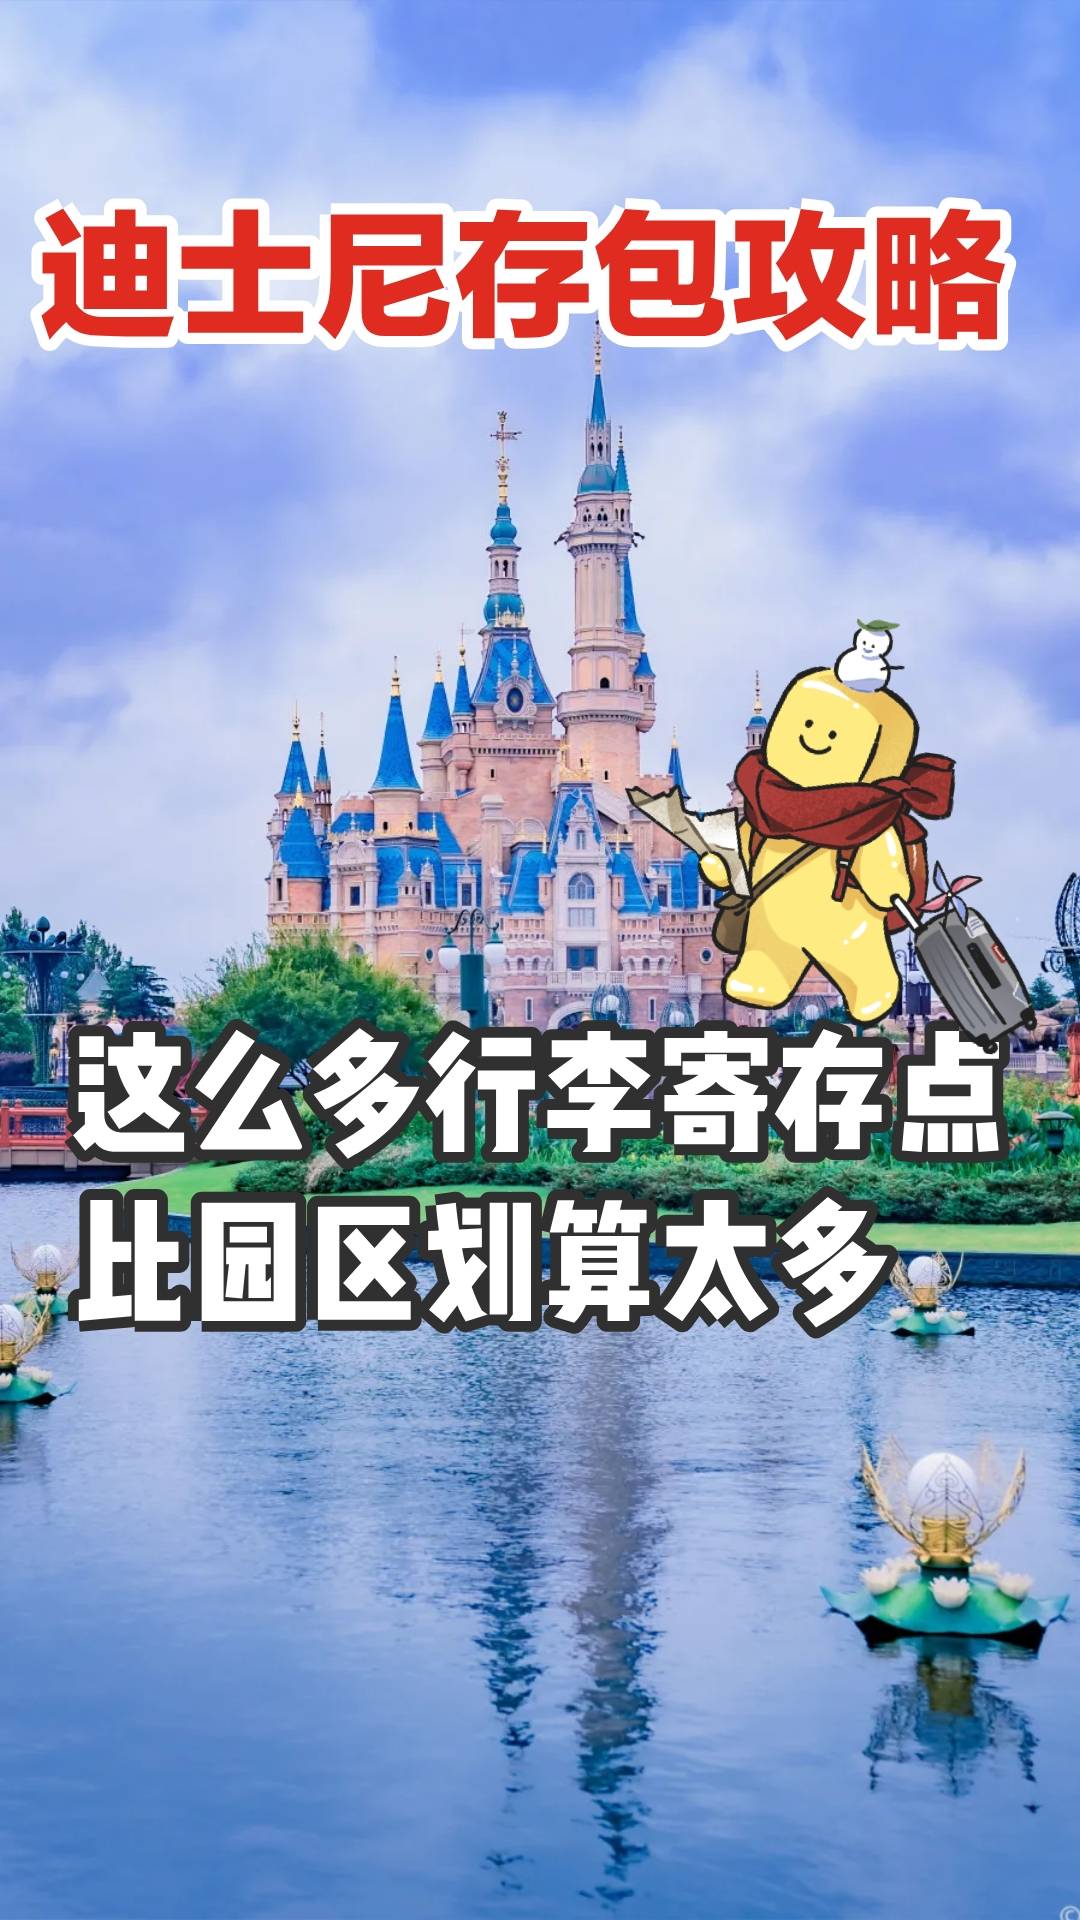 上海迪士尼存包行李寄存旅游攻略、快速入园指南